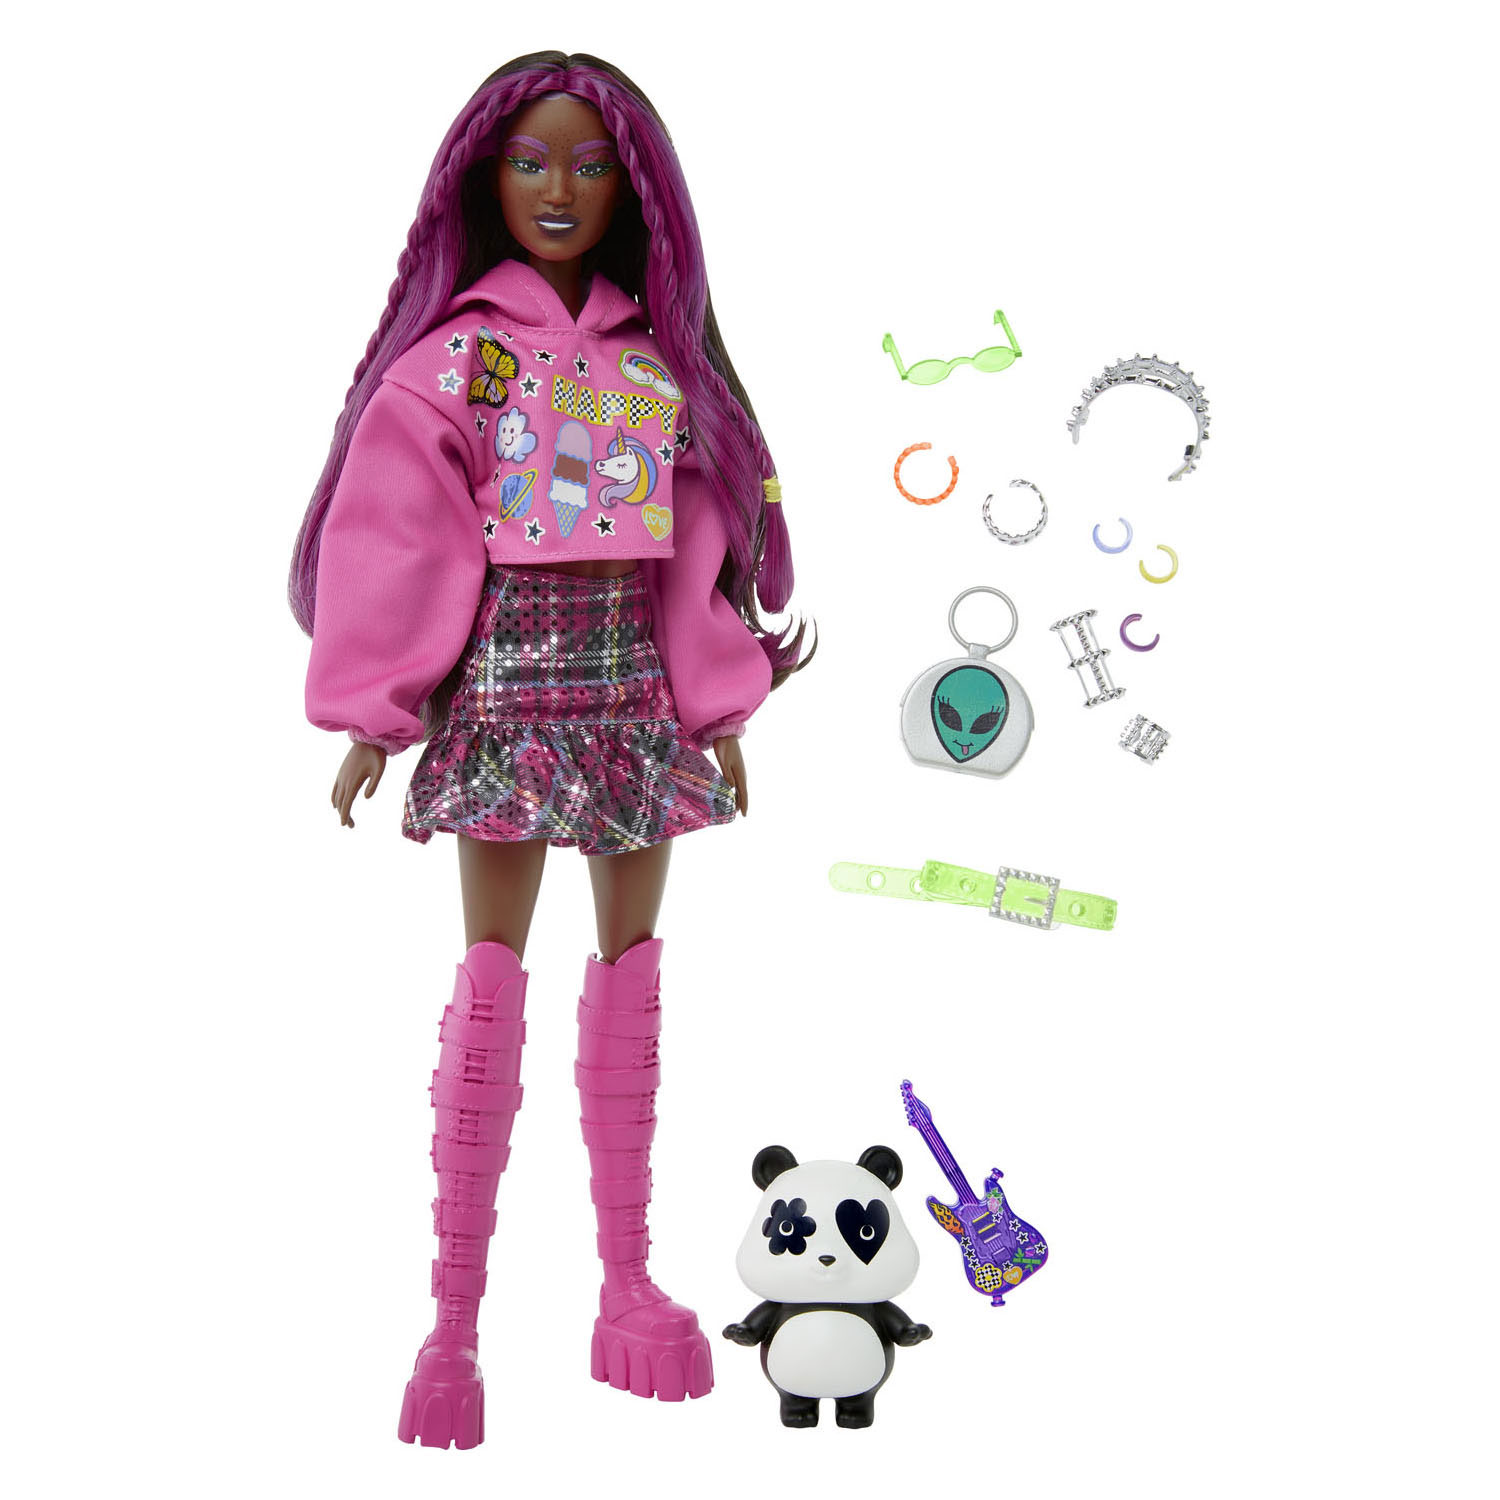 Barbie Extra Puppe mit rosa Haaren im Punk-Stil und Panda